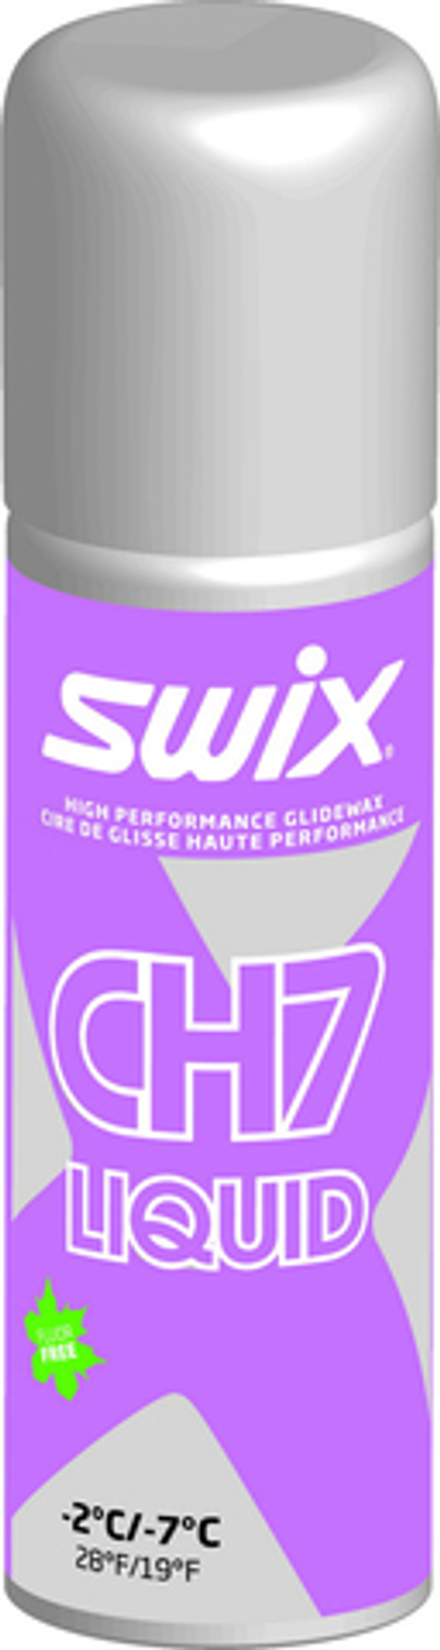 Жидкий парафин SWIX CH7XLiq, (-2-7 С), Violet, 125 ml